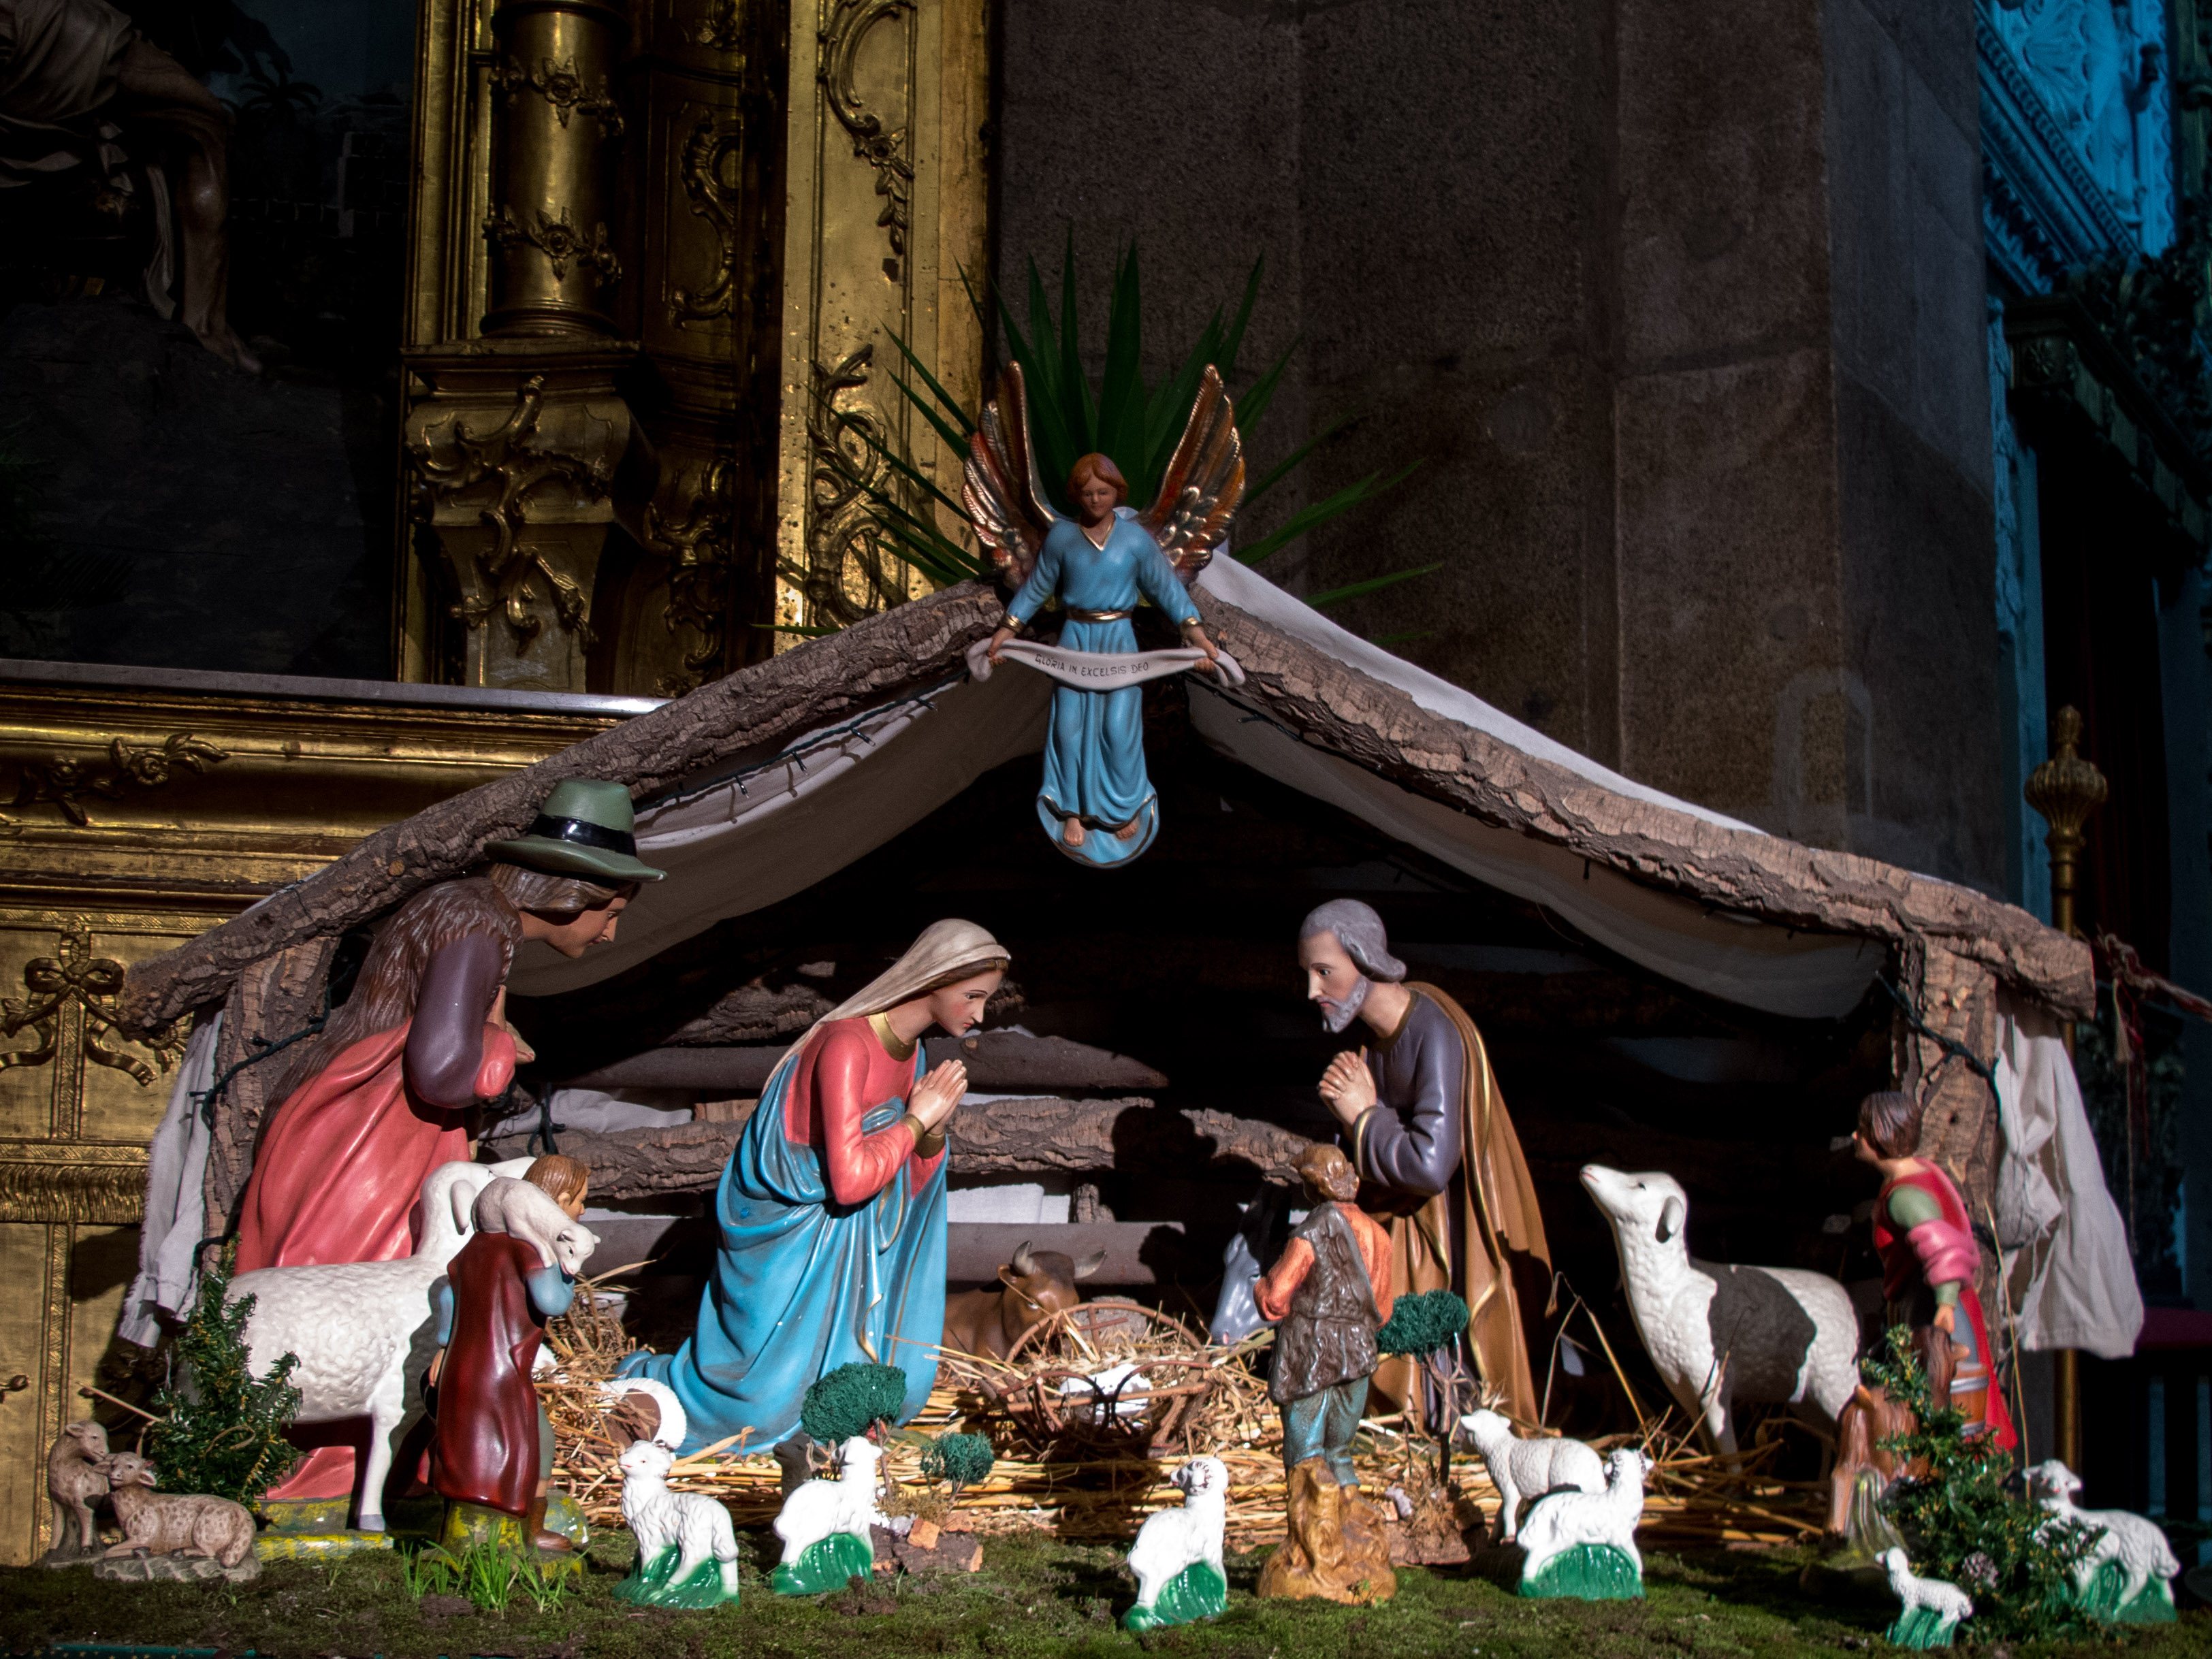 Este Belén se puede encontrar en la Igreja de São Ildefonso, en la Praça da Batalha cerca de la Rua de Santa Catarina. Todavía no tiene el niño Jesús (que sólo será colocado el día 25 de Diciembre) ni los Reyes Magos (que llegan la noche del día 5 de Enero).